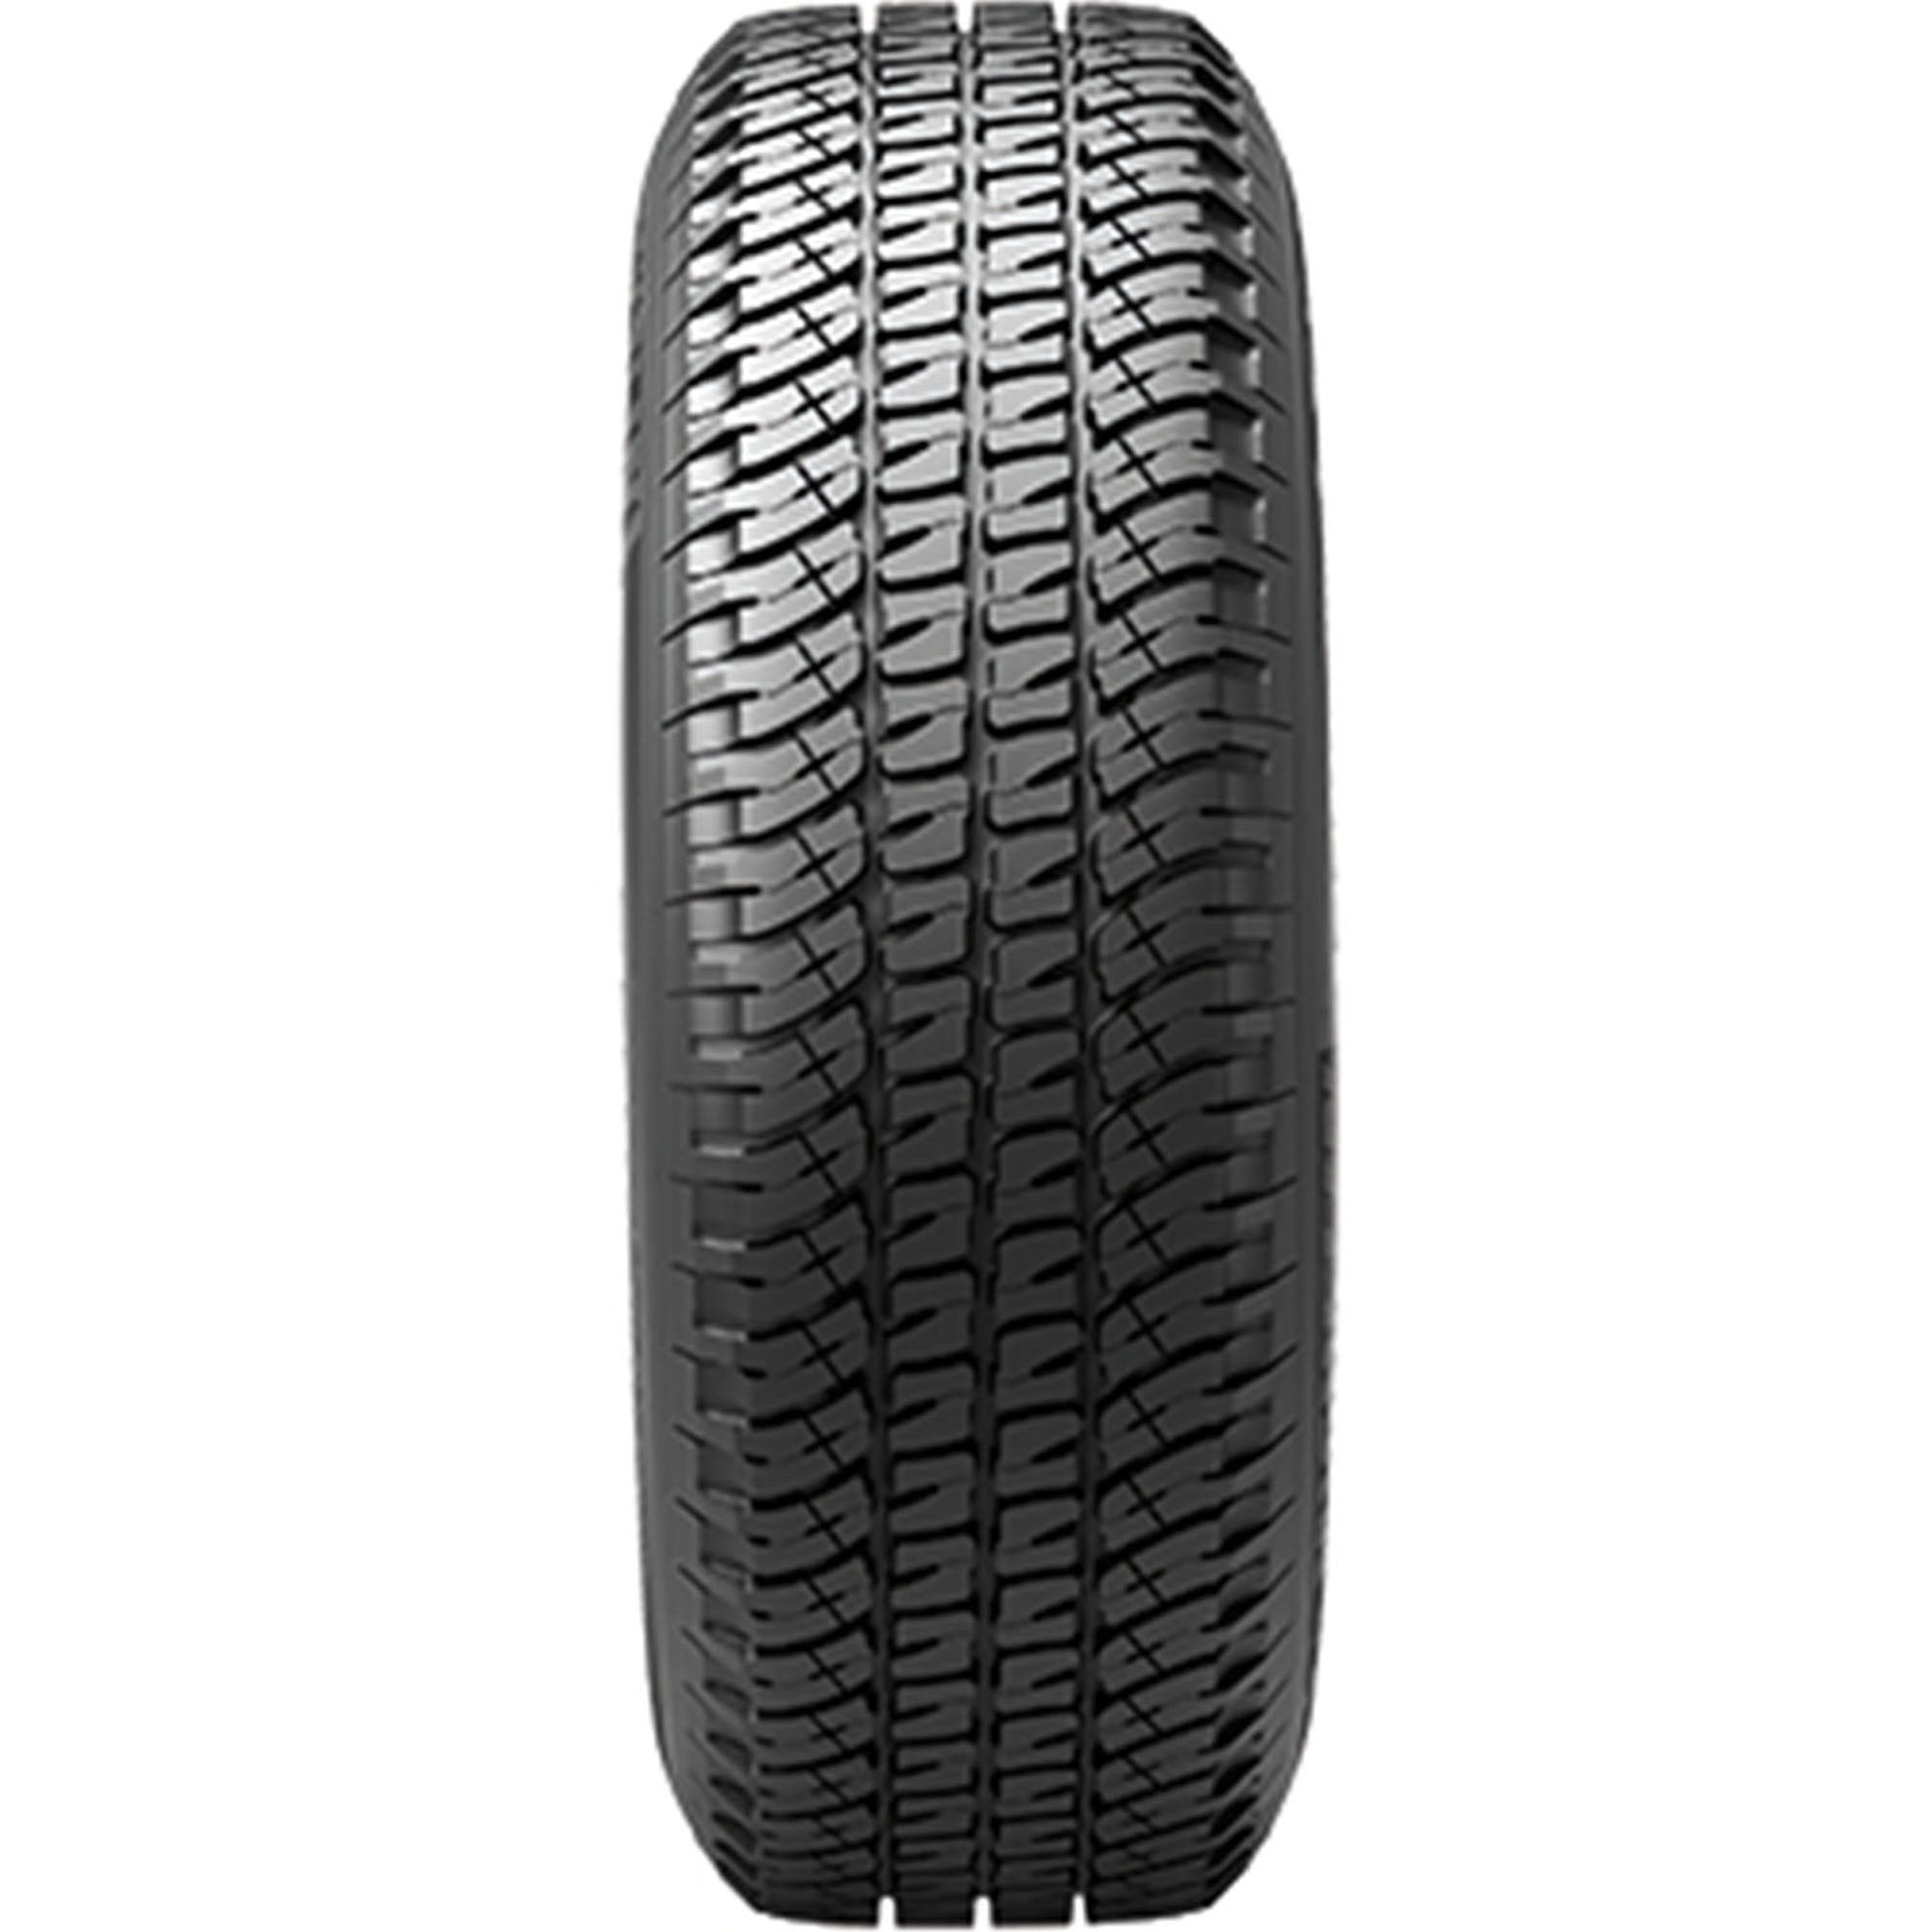 Michelin LTX A/T2 All-Season LT275/65R18/E 123/120R LRE Tire